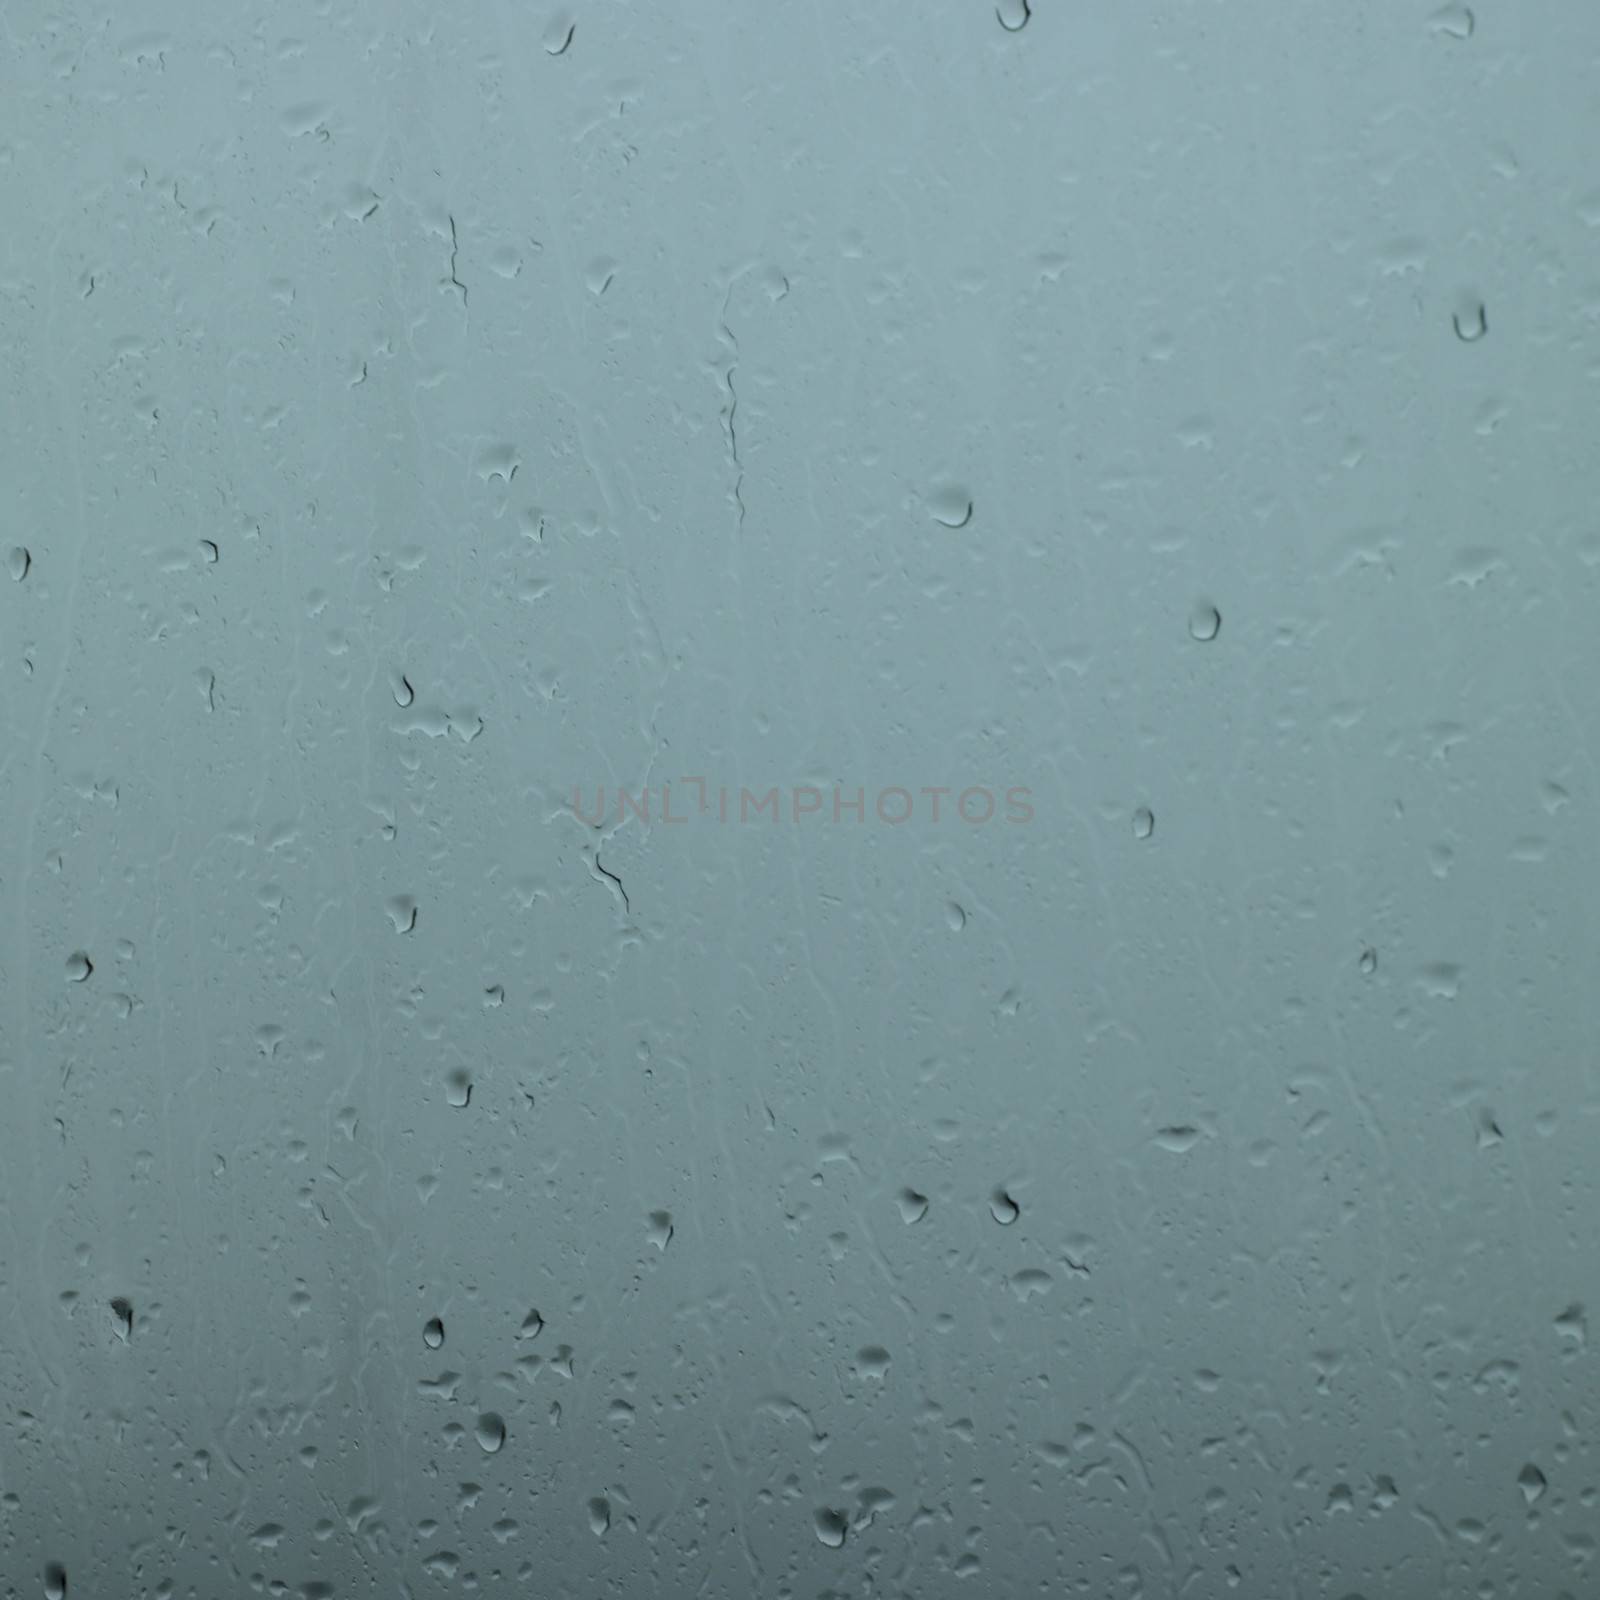 Rain drops in a window by mmm